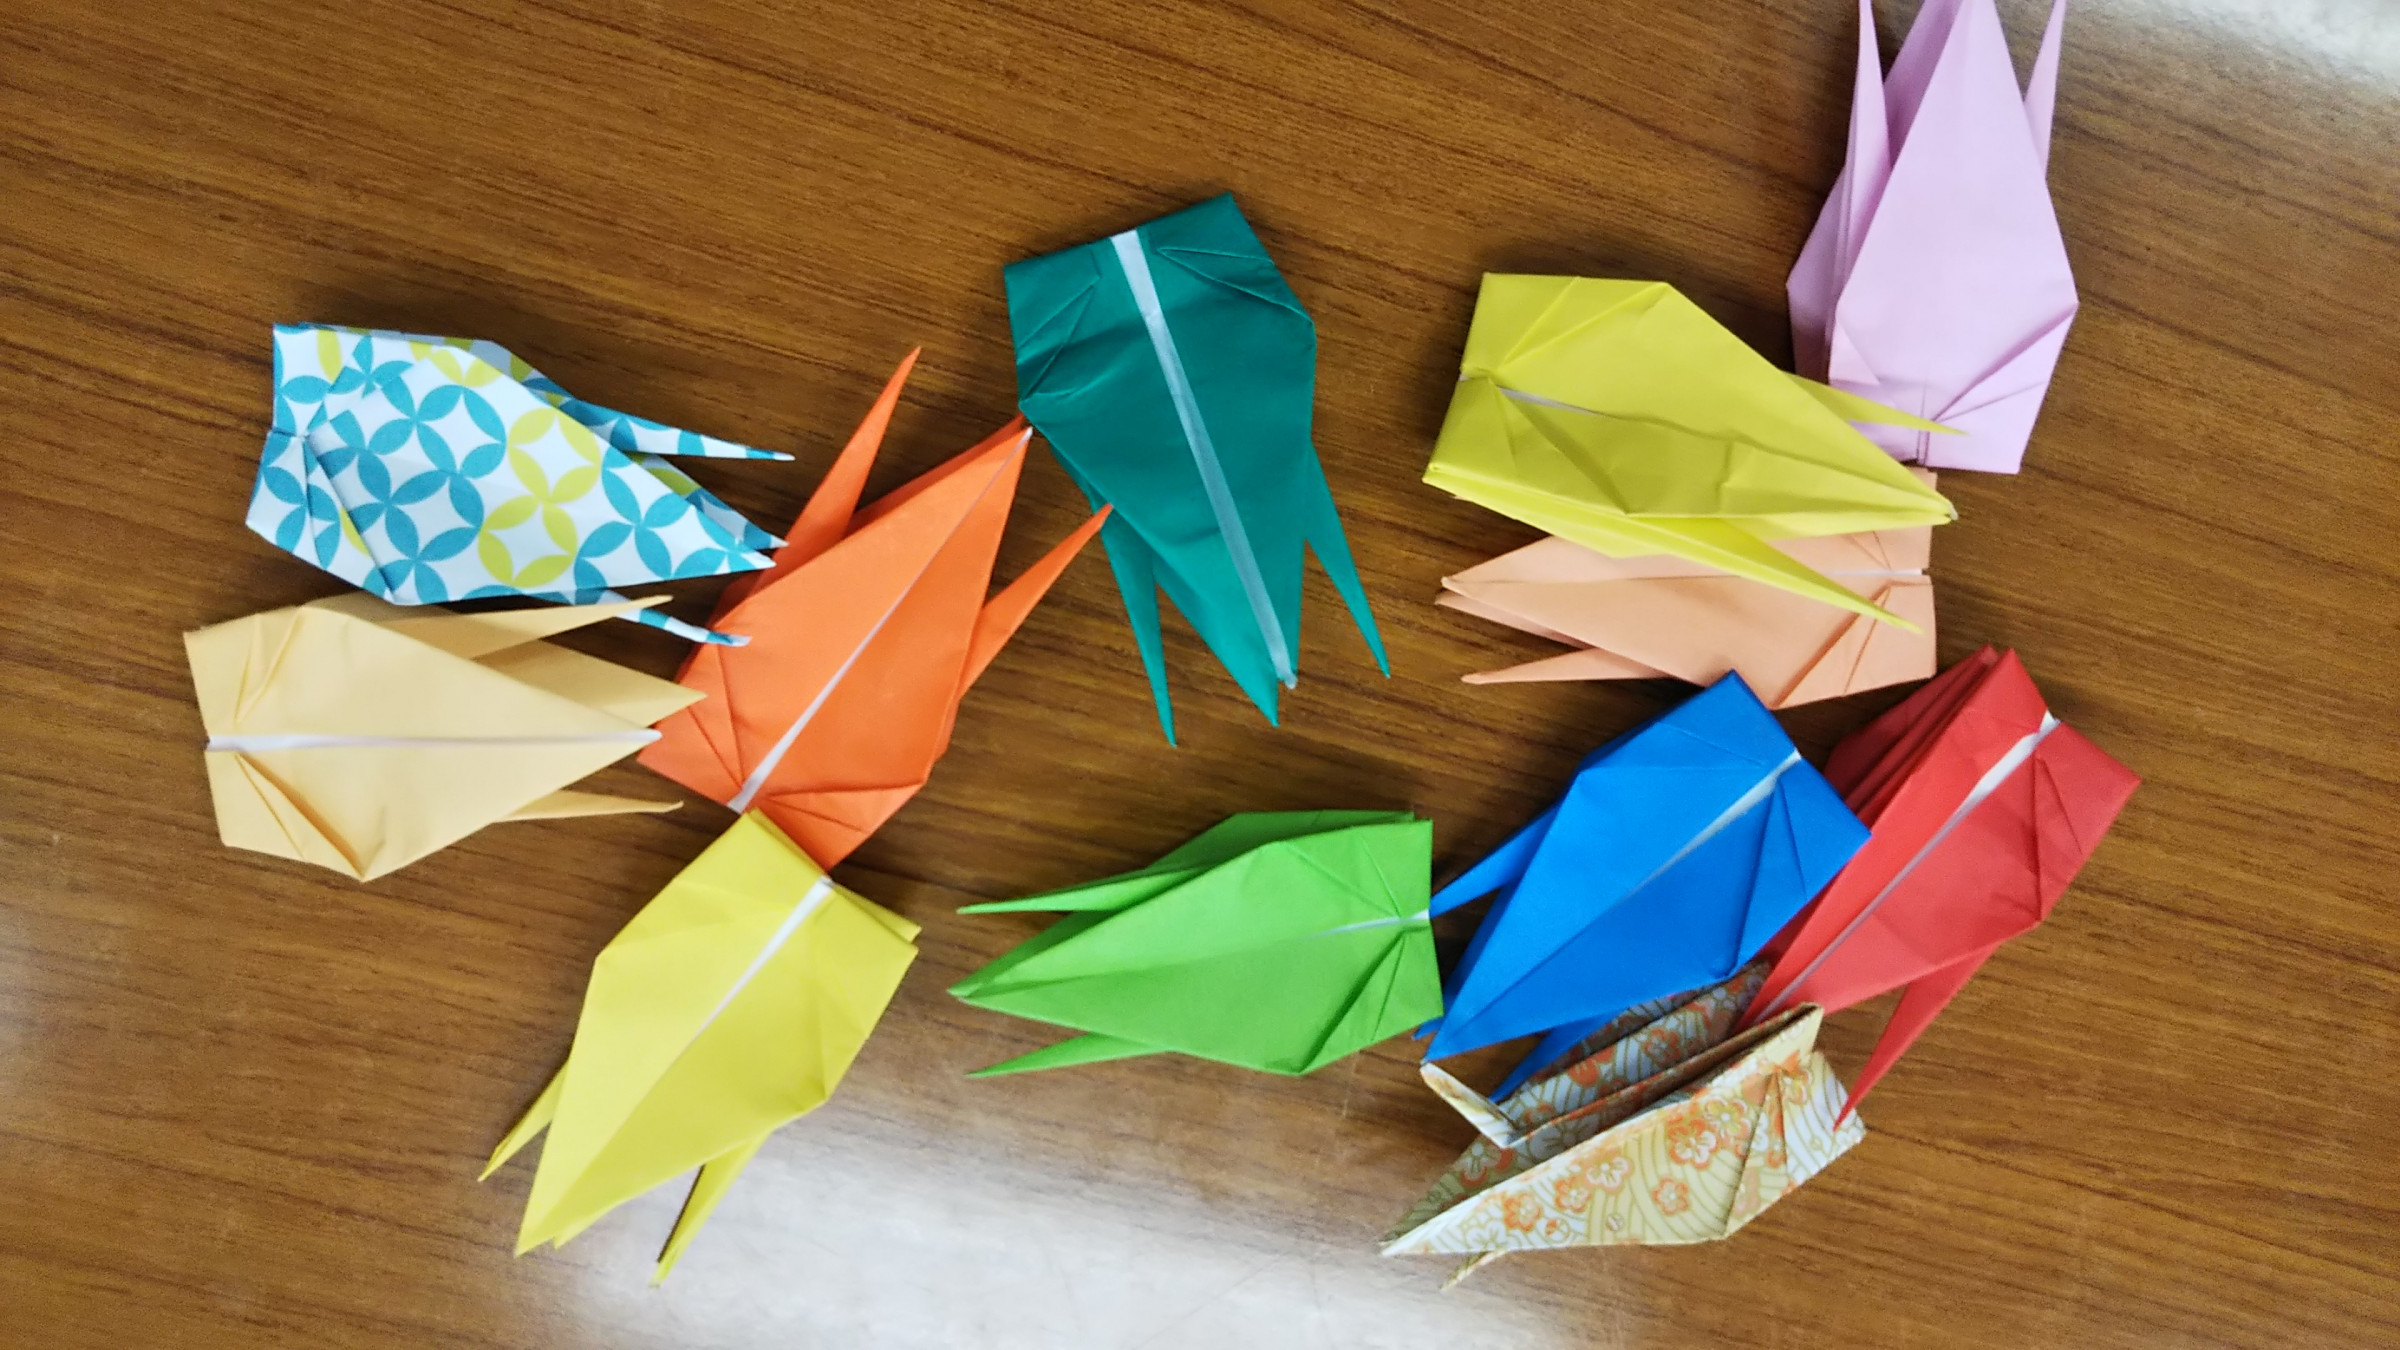 於福交流ステーションでは9月より、「折り鶴プロジェクト」を始めています。